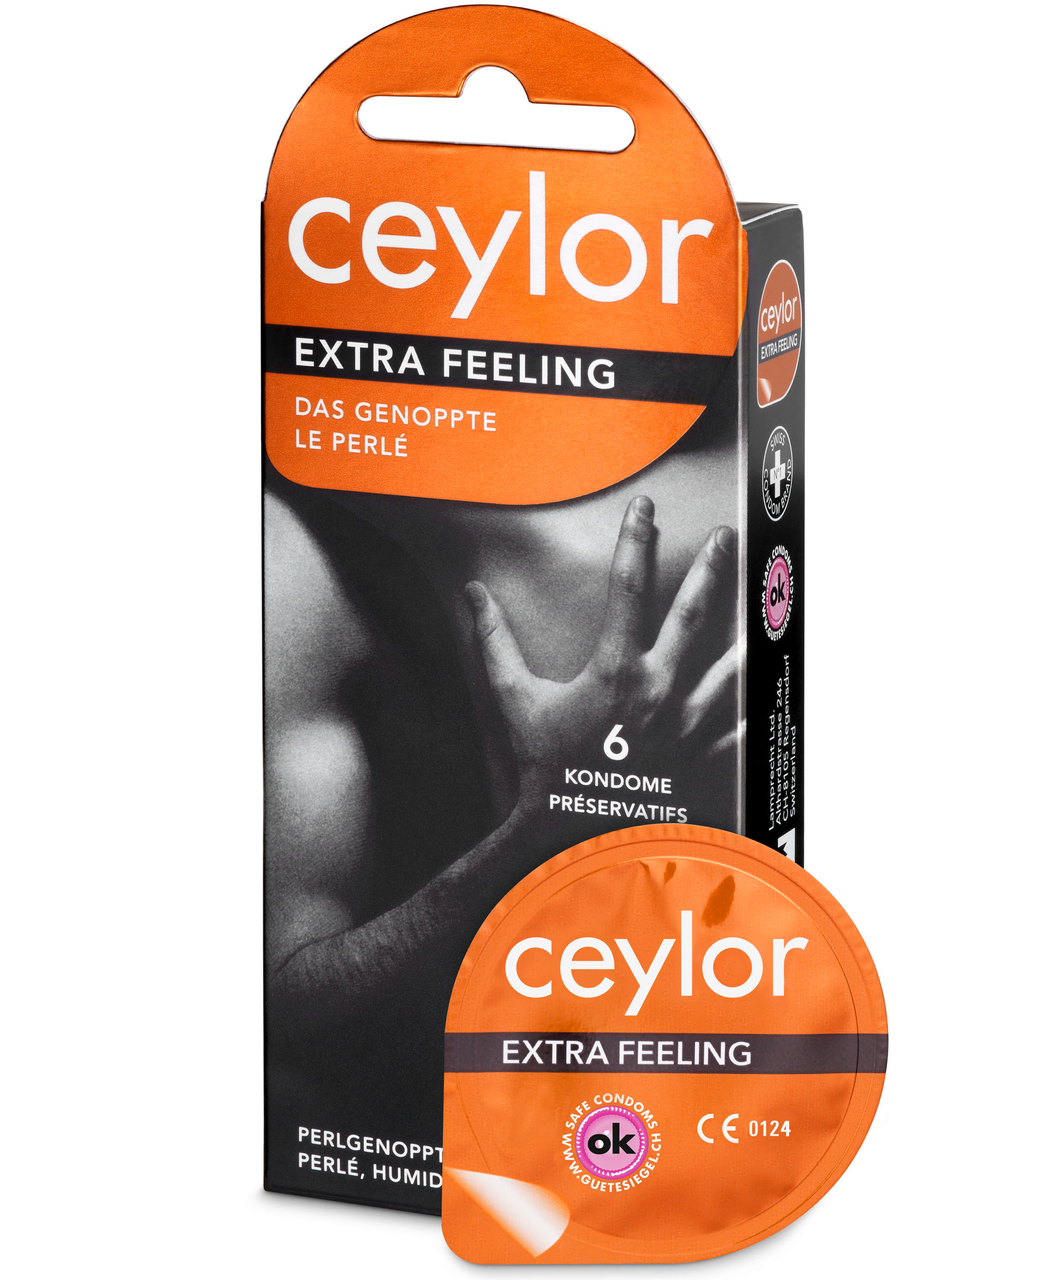 Ceylor Extra Feeling prezervatyvai (6 vnt.)